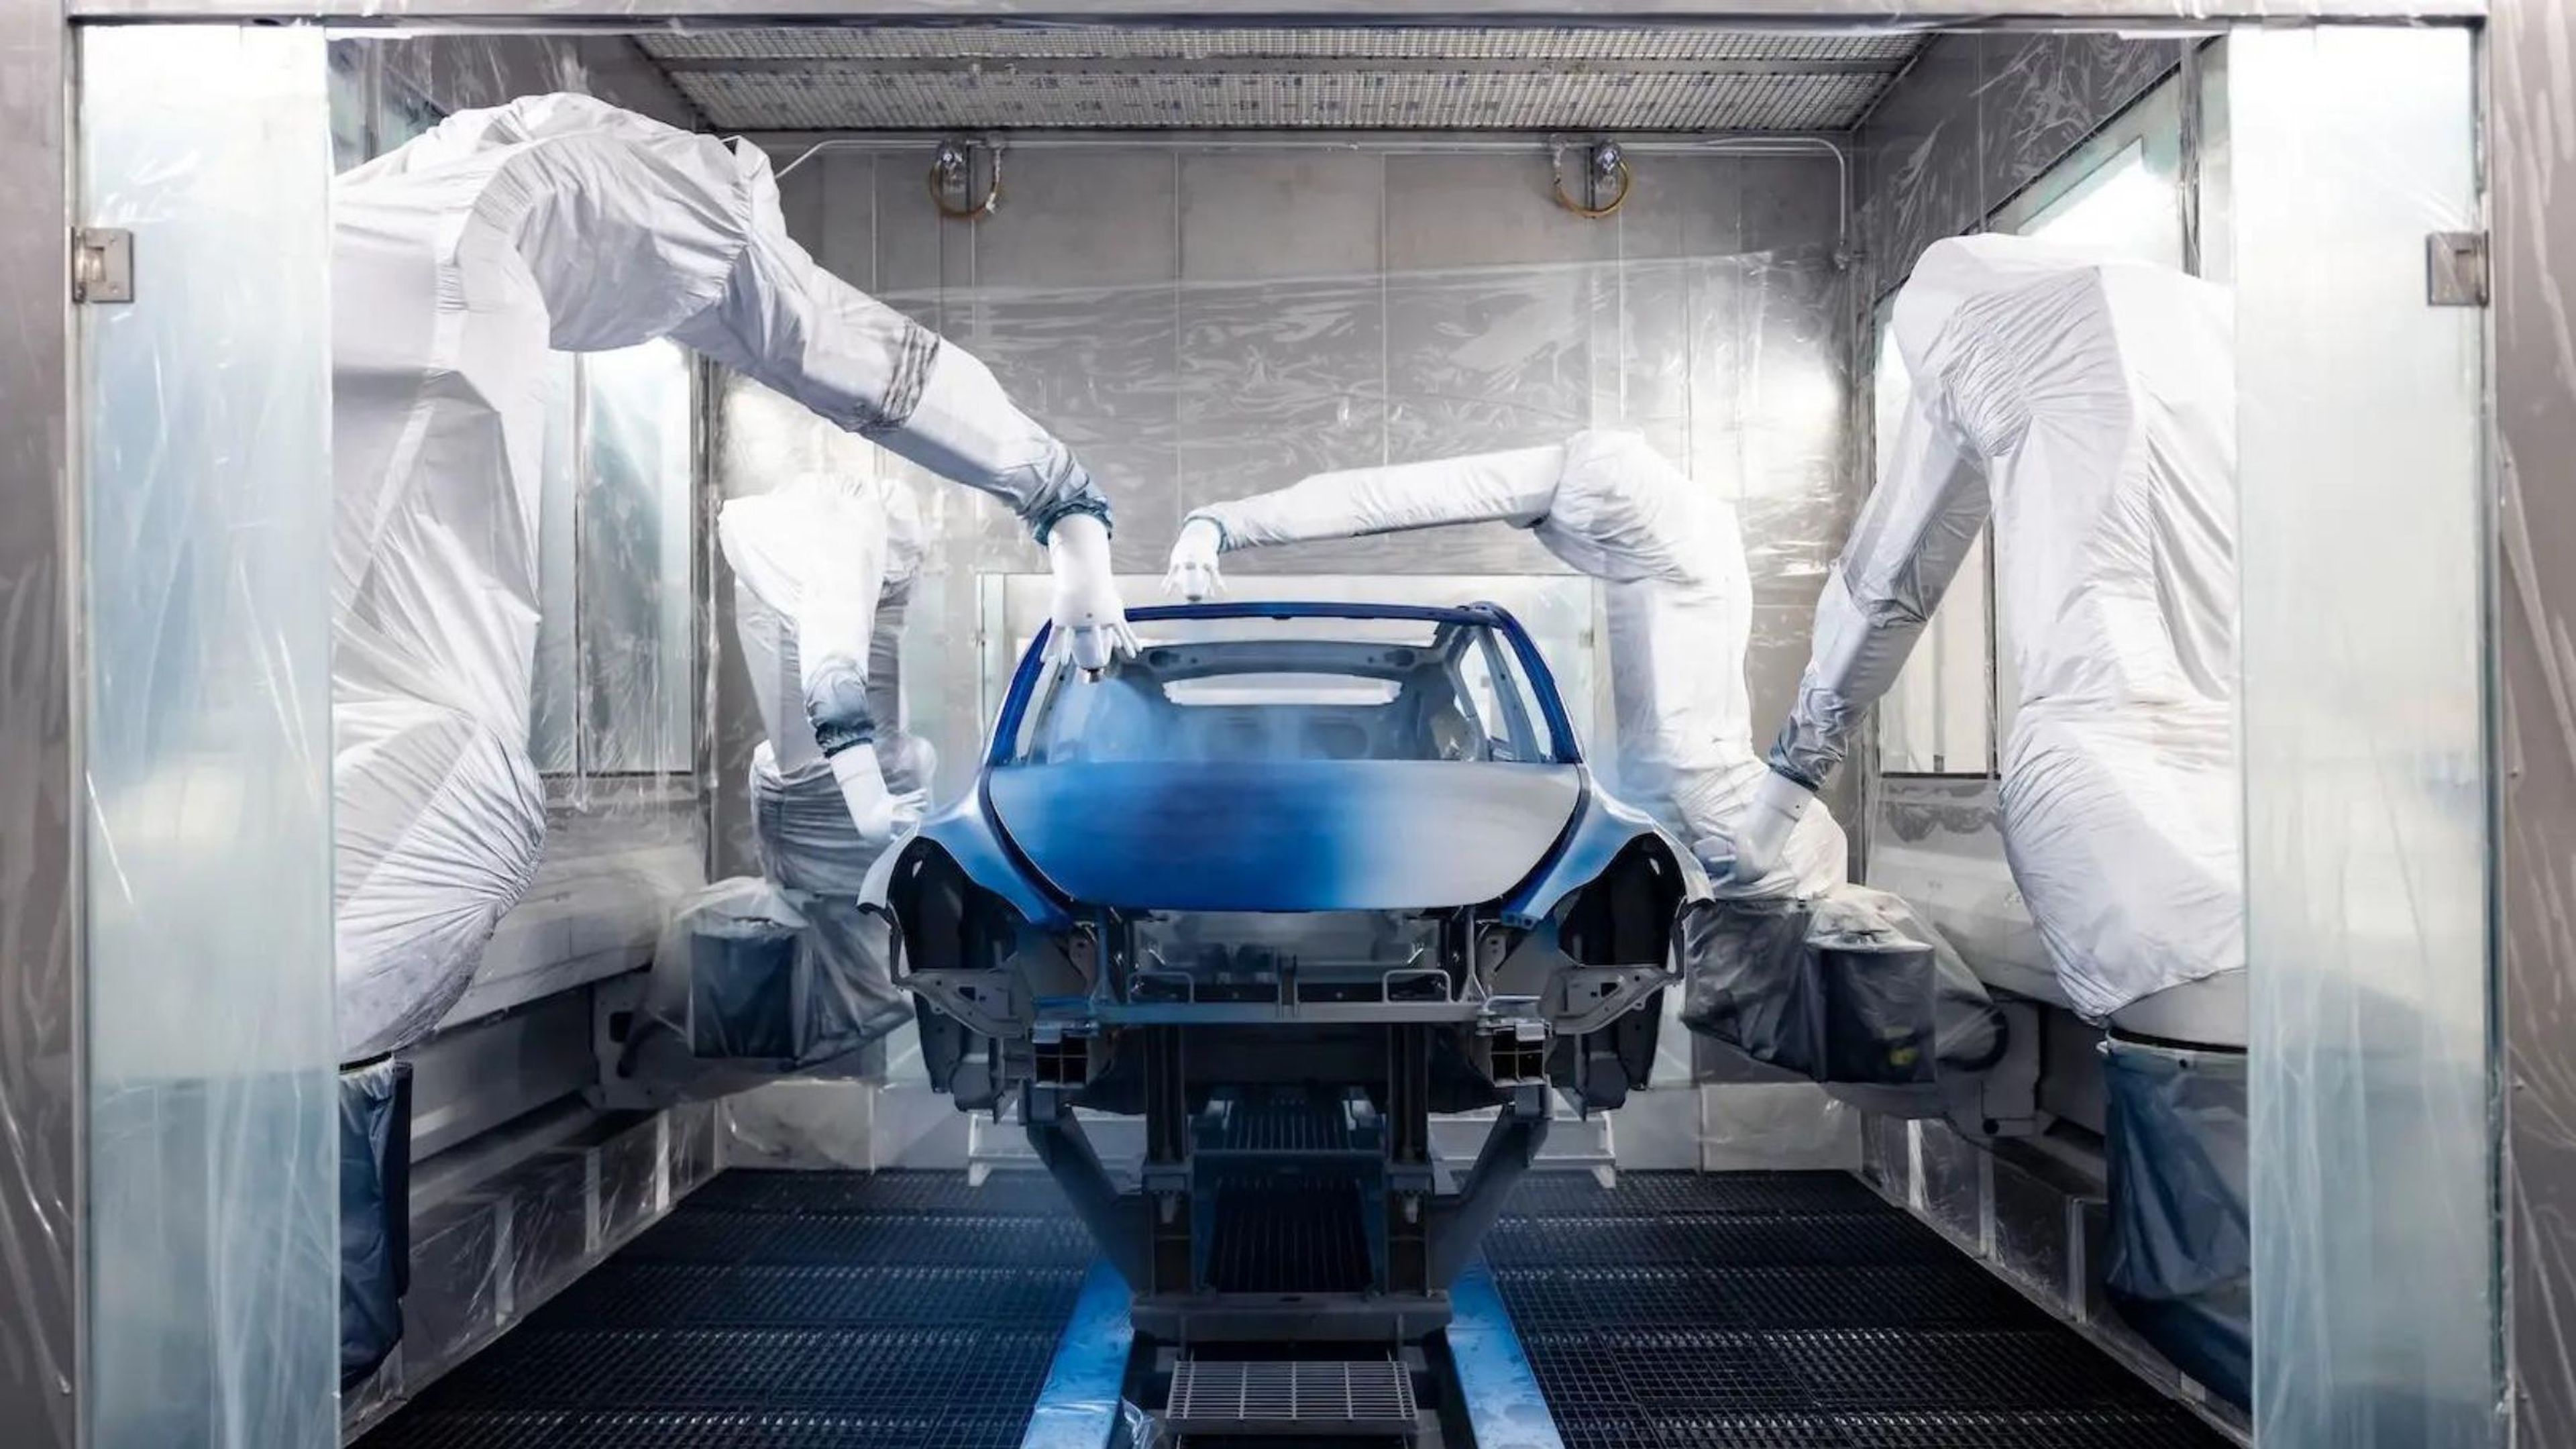 Otro hecho más que podría ensombrecer el futuro de Tesla como fabricante de automóviles